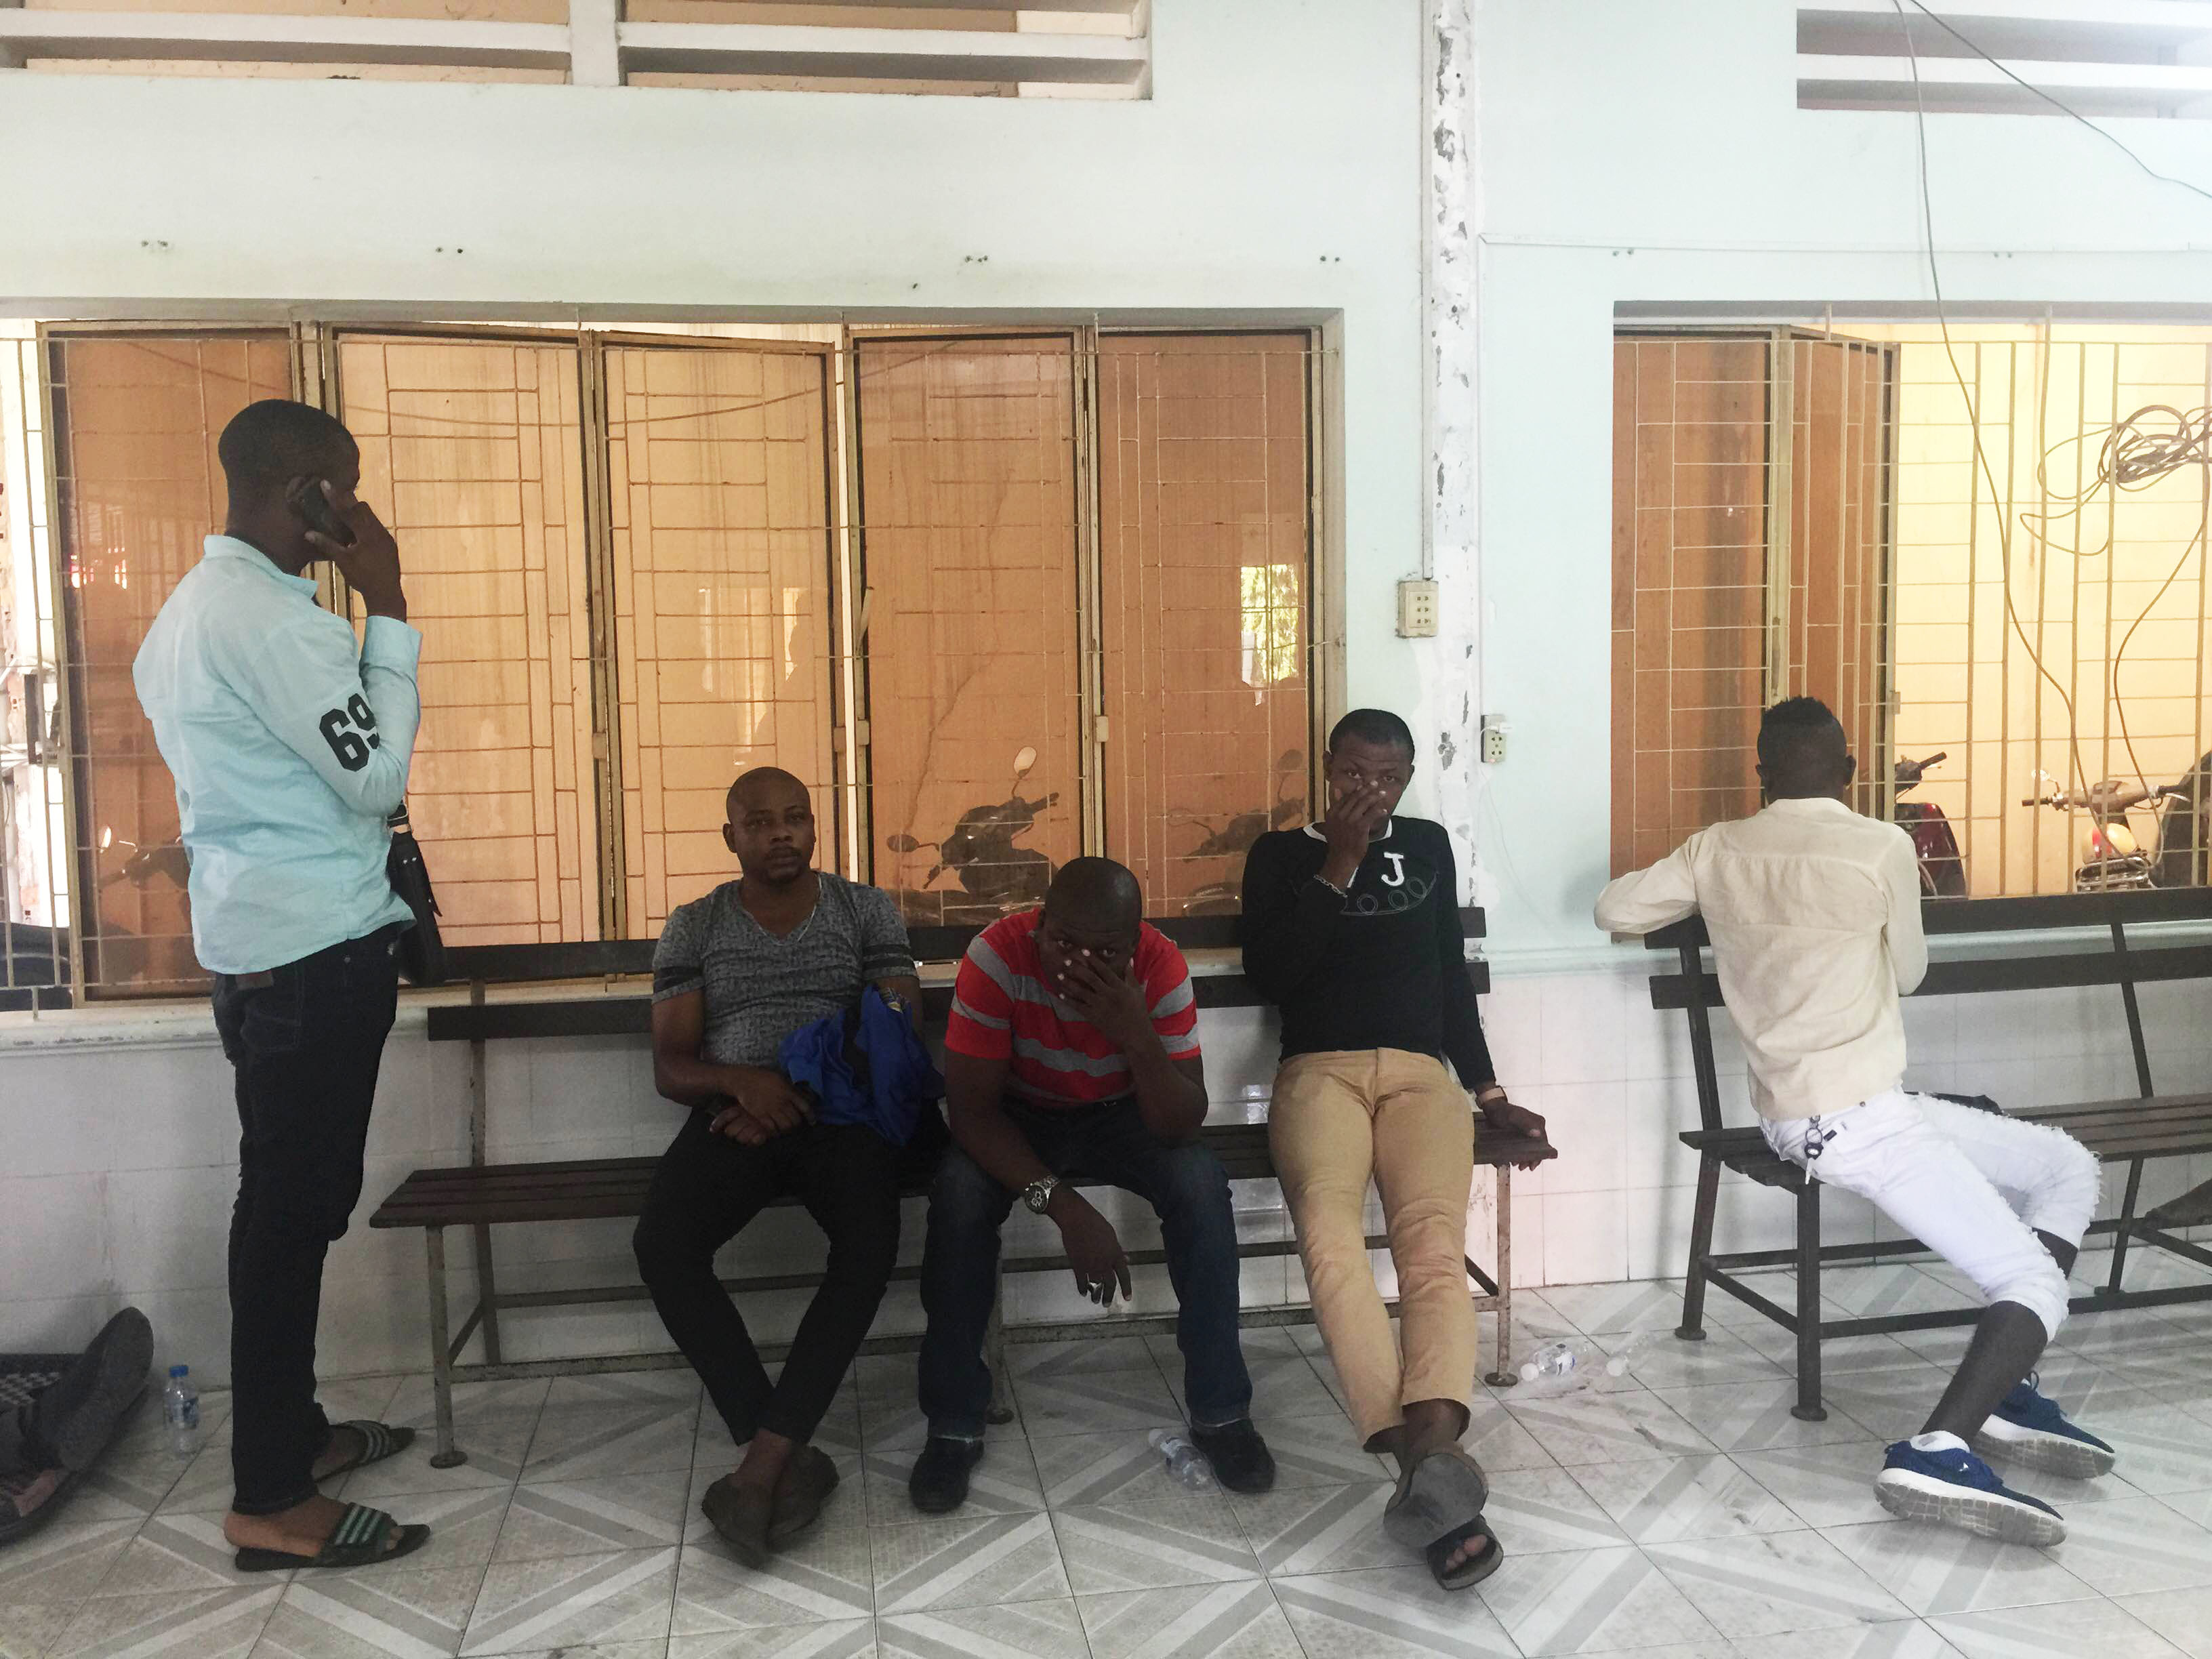 Những người châu Phi đang bị tạm giữ tại trụ sở công an - Ảnh: Nguyên Bảo
